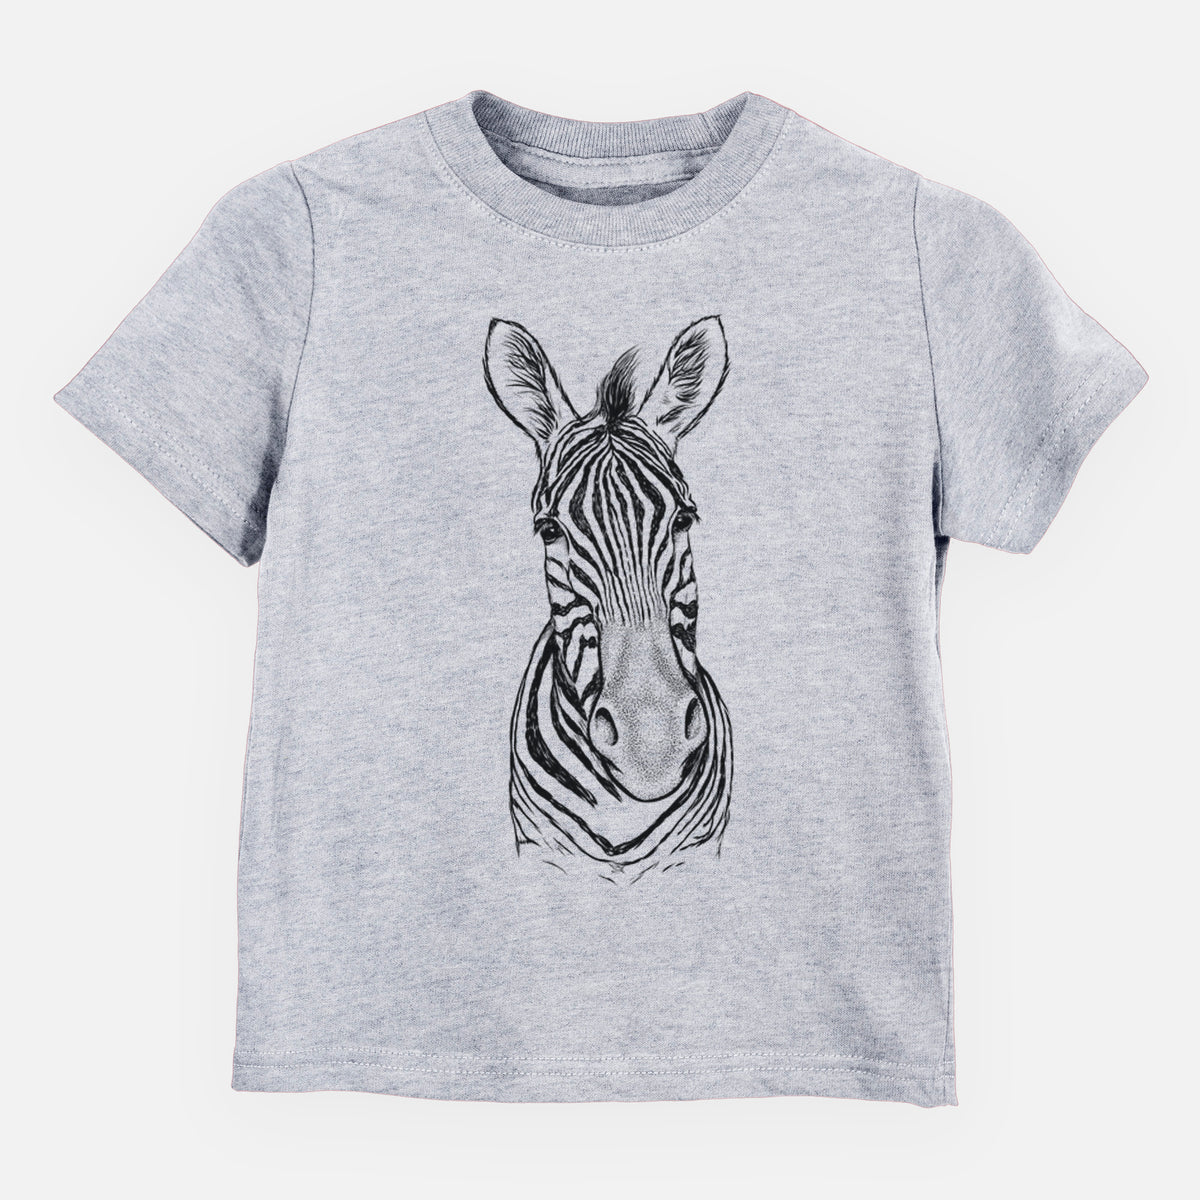 Damara Zebra - Equus quagga antiquorum - Kids Shirt